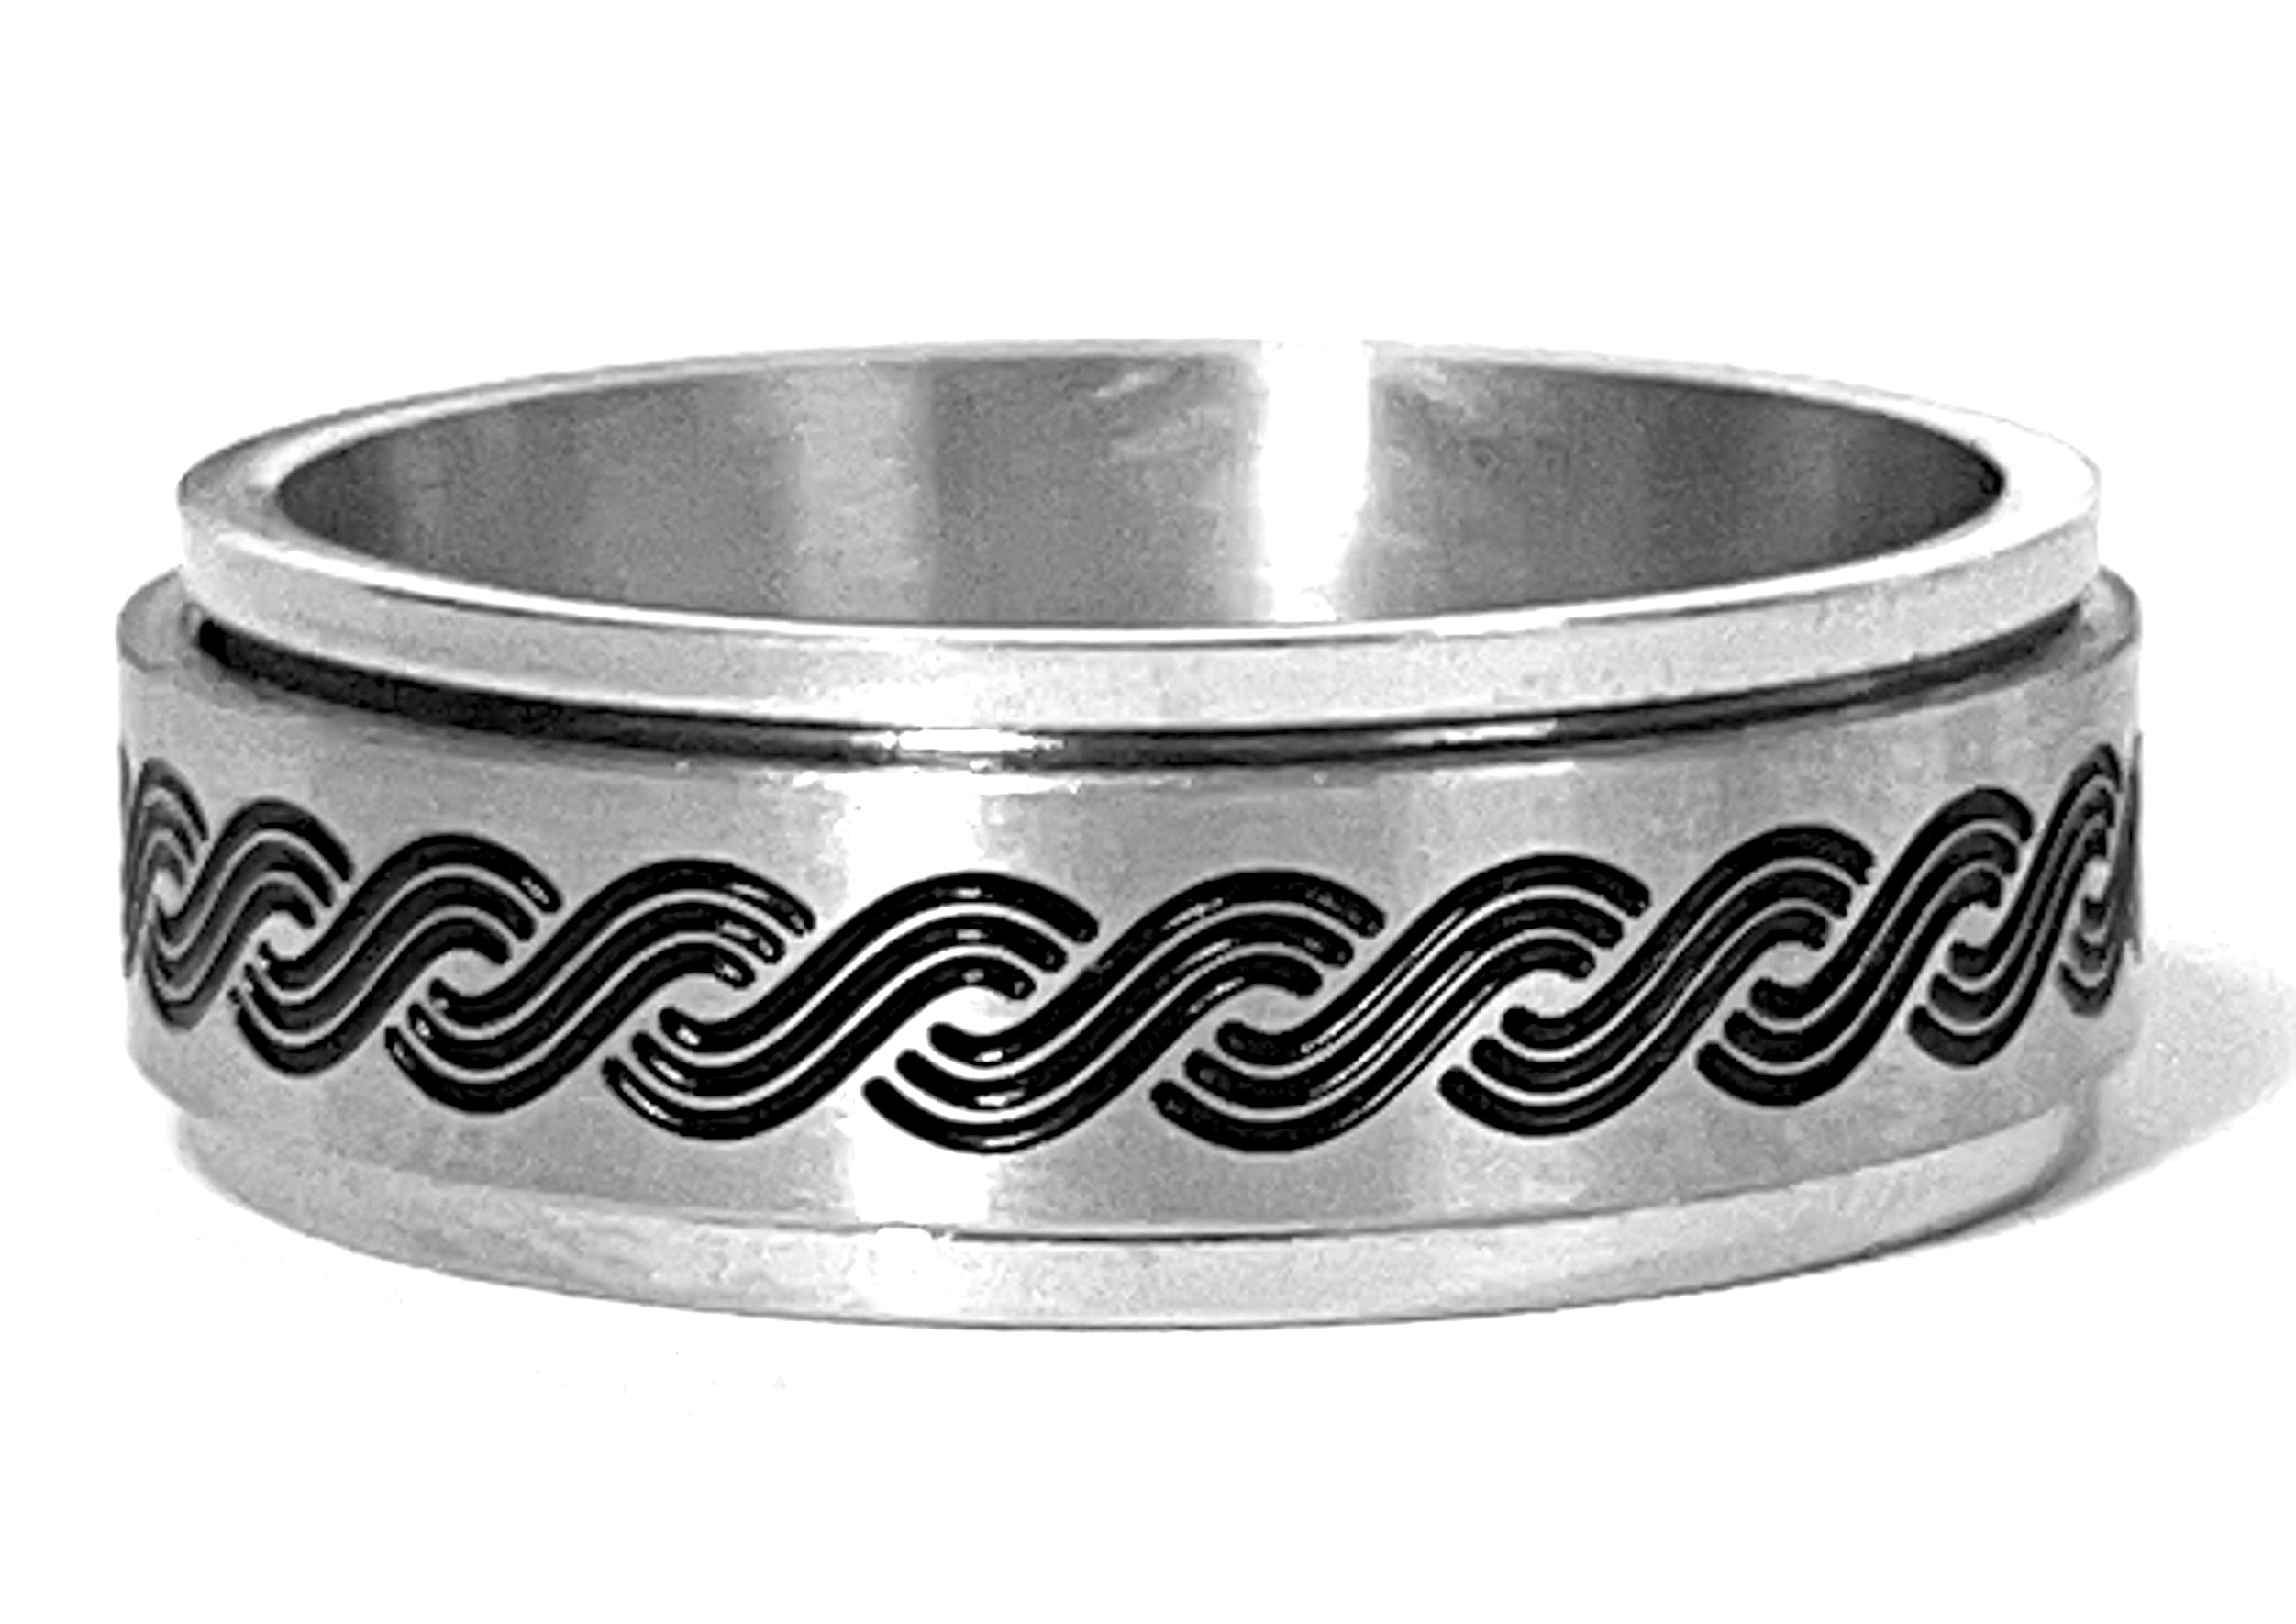 Buy Wave Design Men's Spinning Stainless Steel RingBulk Price